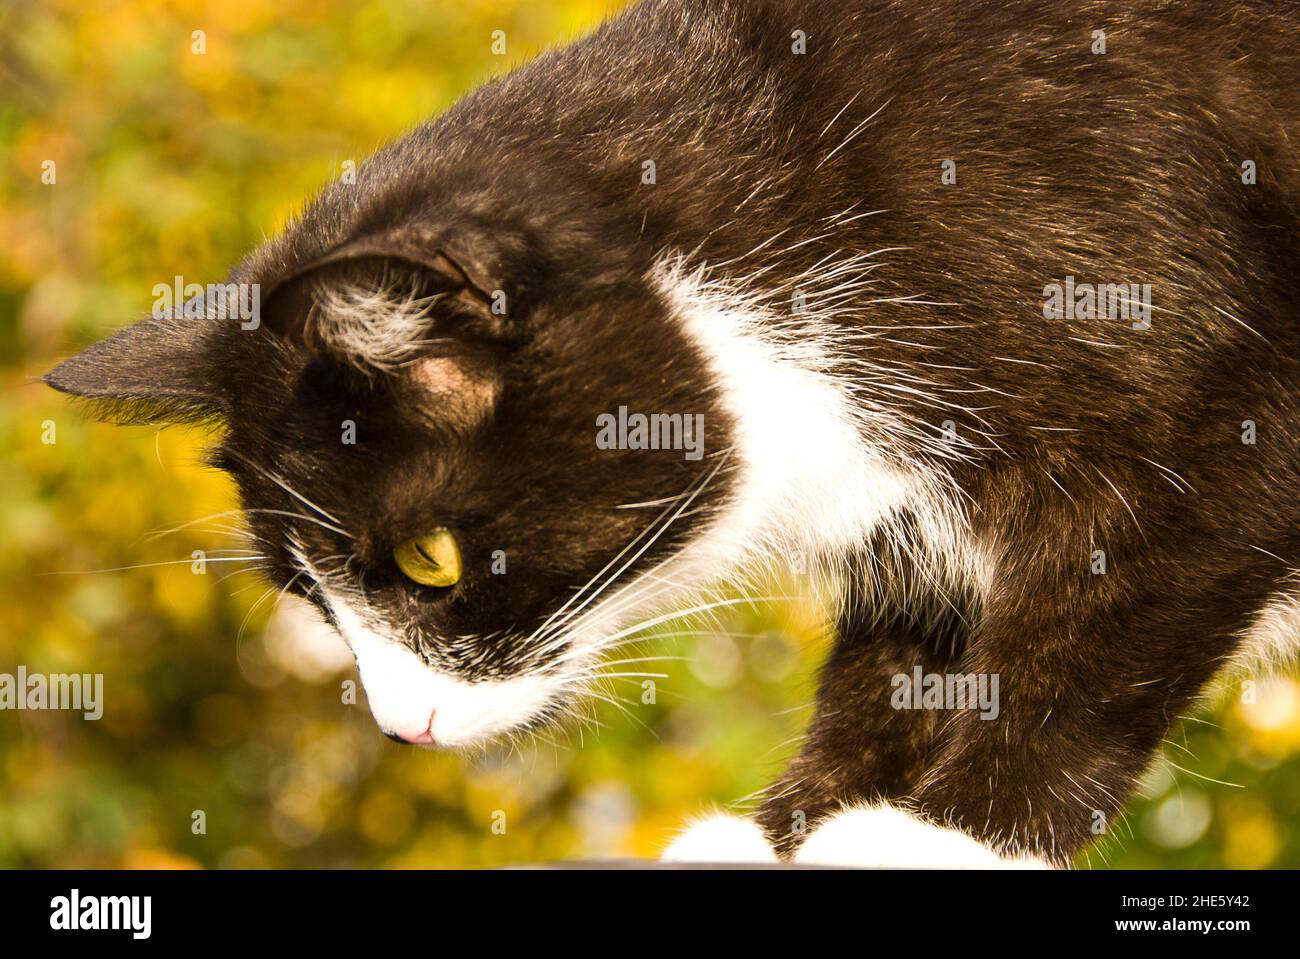 domestic bicolor cat Stock Photo